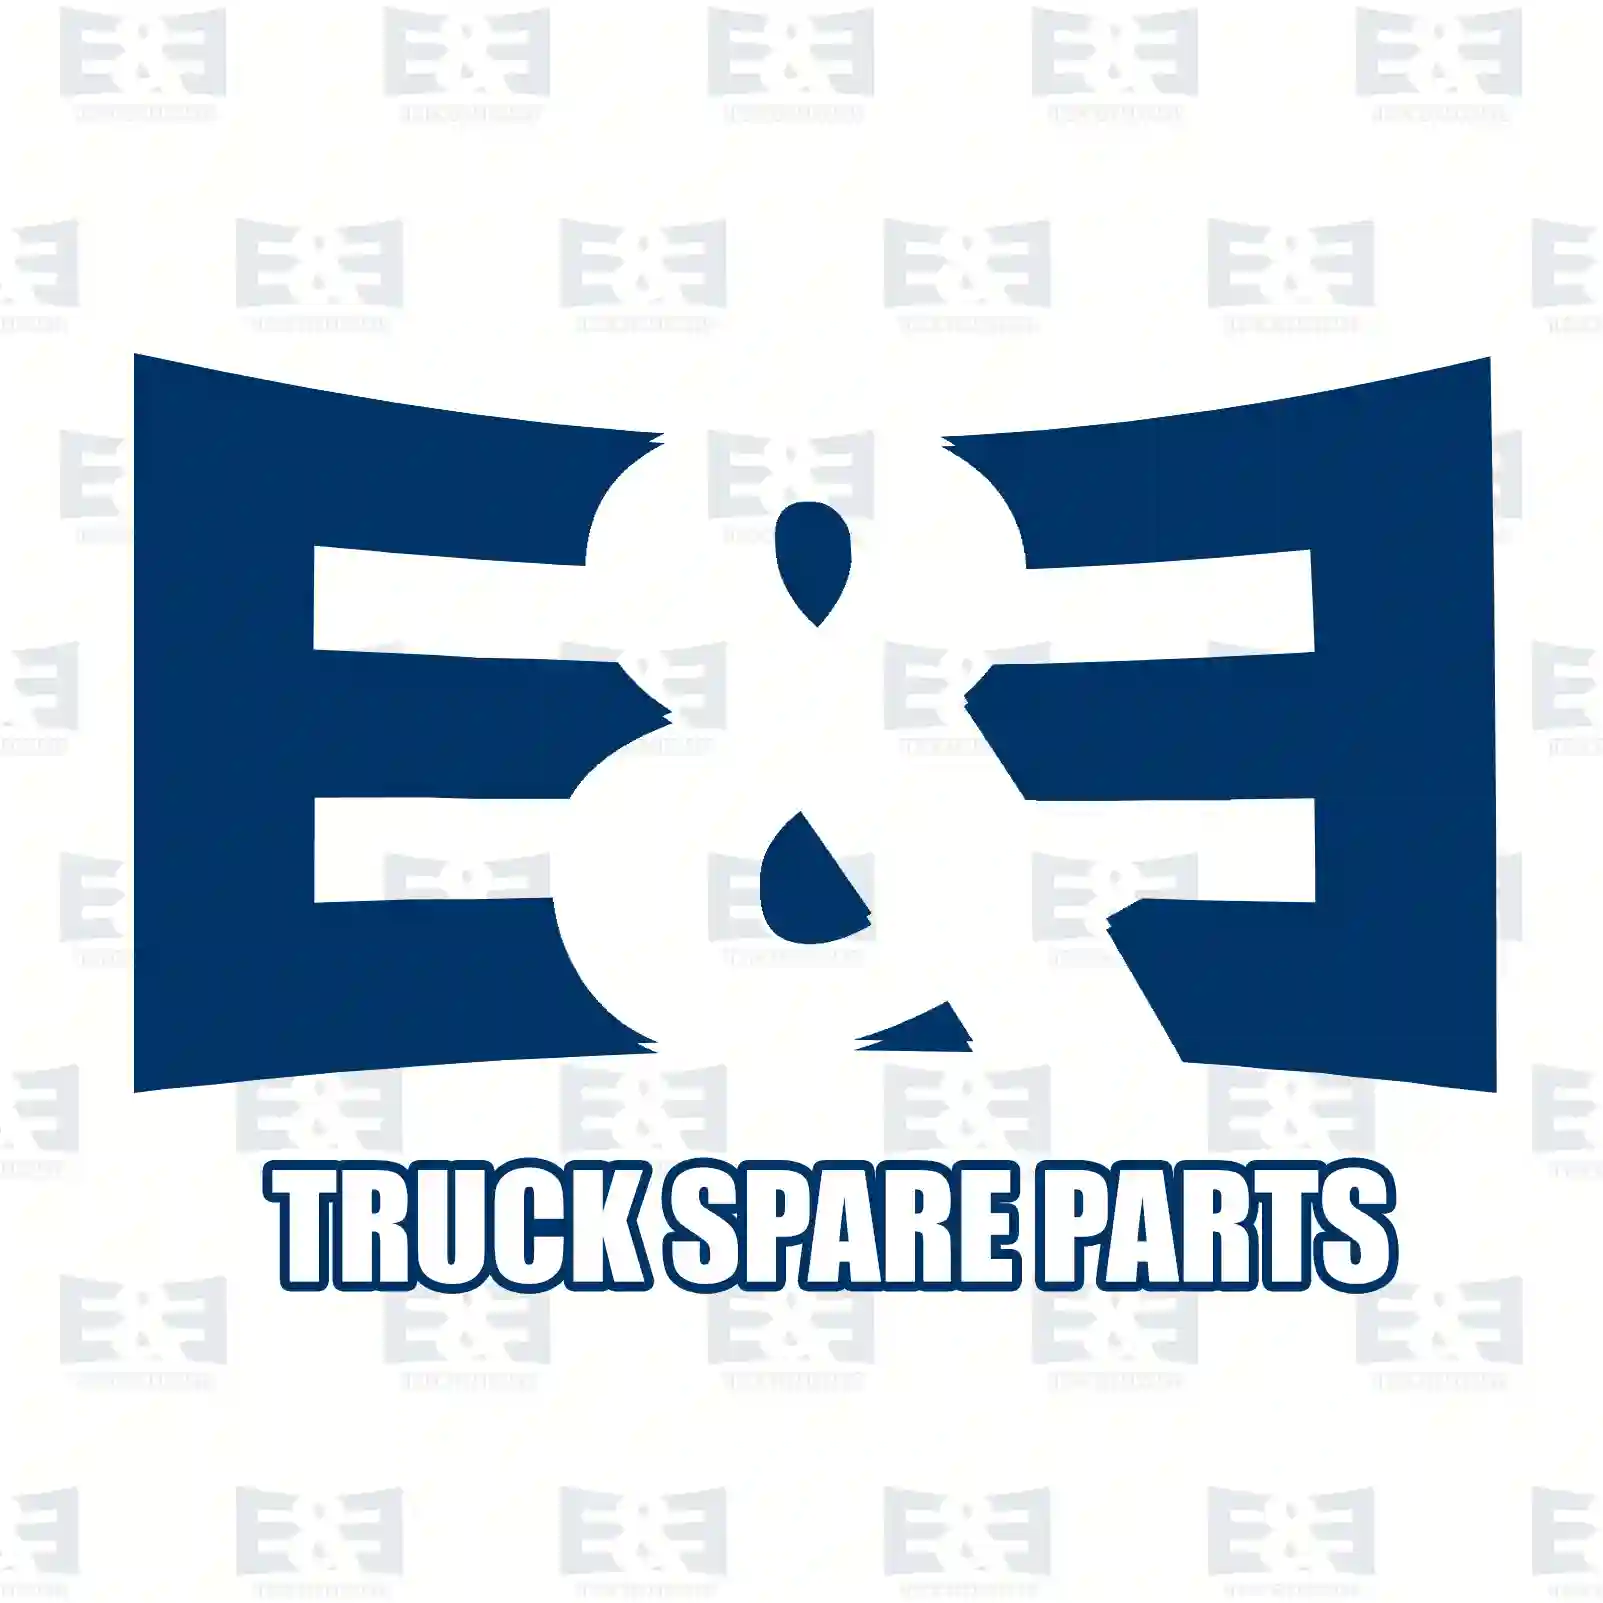 Oil seal, 2E2278006, 0239975547, ZG02738-0008, ||  2E2278006 E&E Truck Spare Parts | Truck Spare Parts, Auotomotive Spare Parts Oil seal, 2E2278006, 0239975547, ZG02738-0008, ||  2E2278006 E&E Truck Spare Parts | Truck Spare Parts, Auotomotive Spare Parts